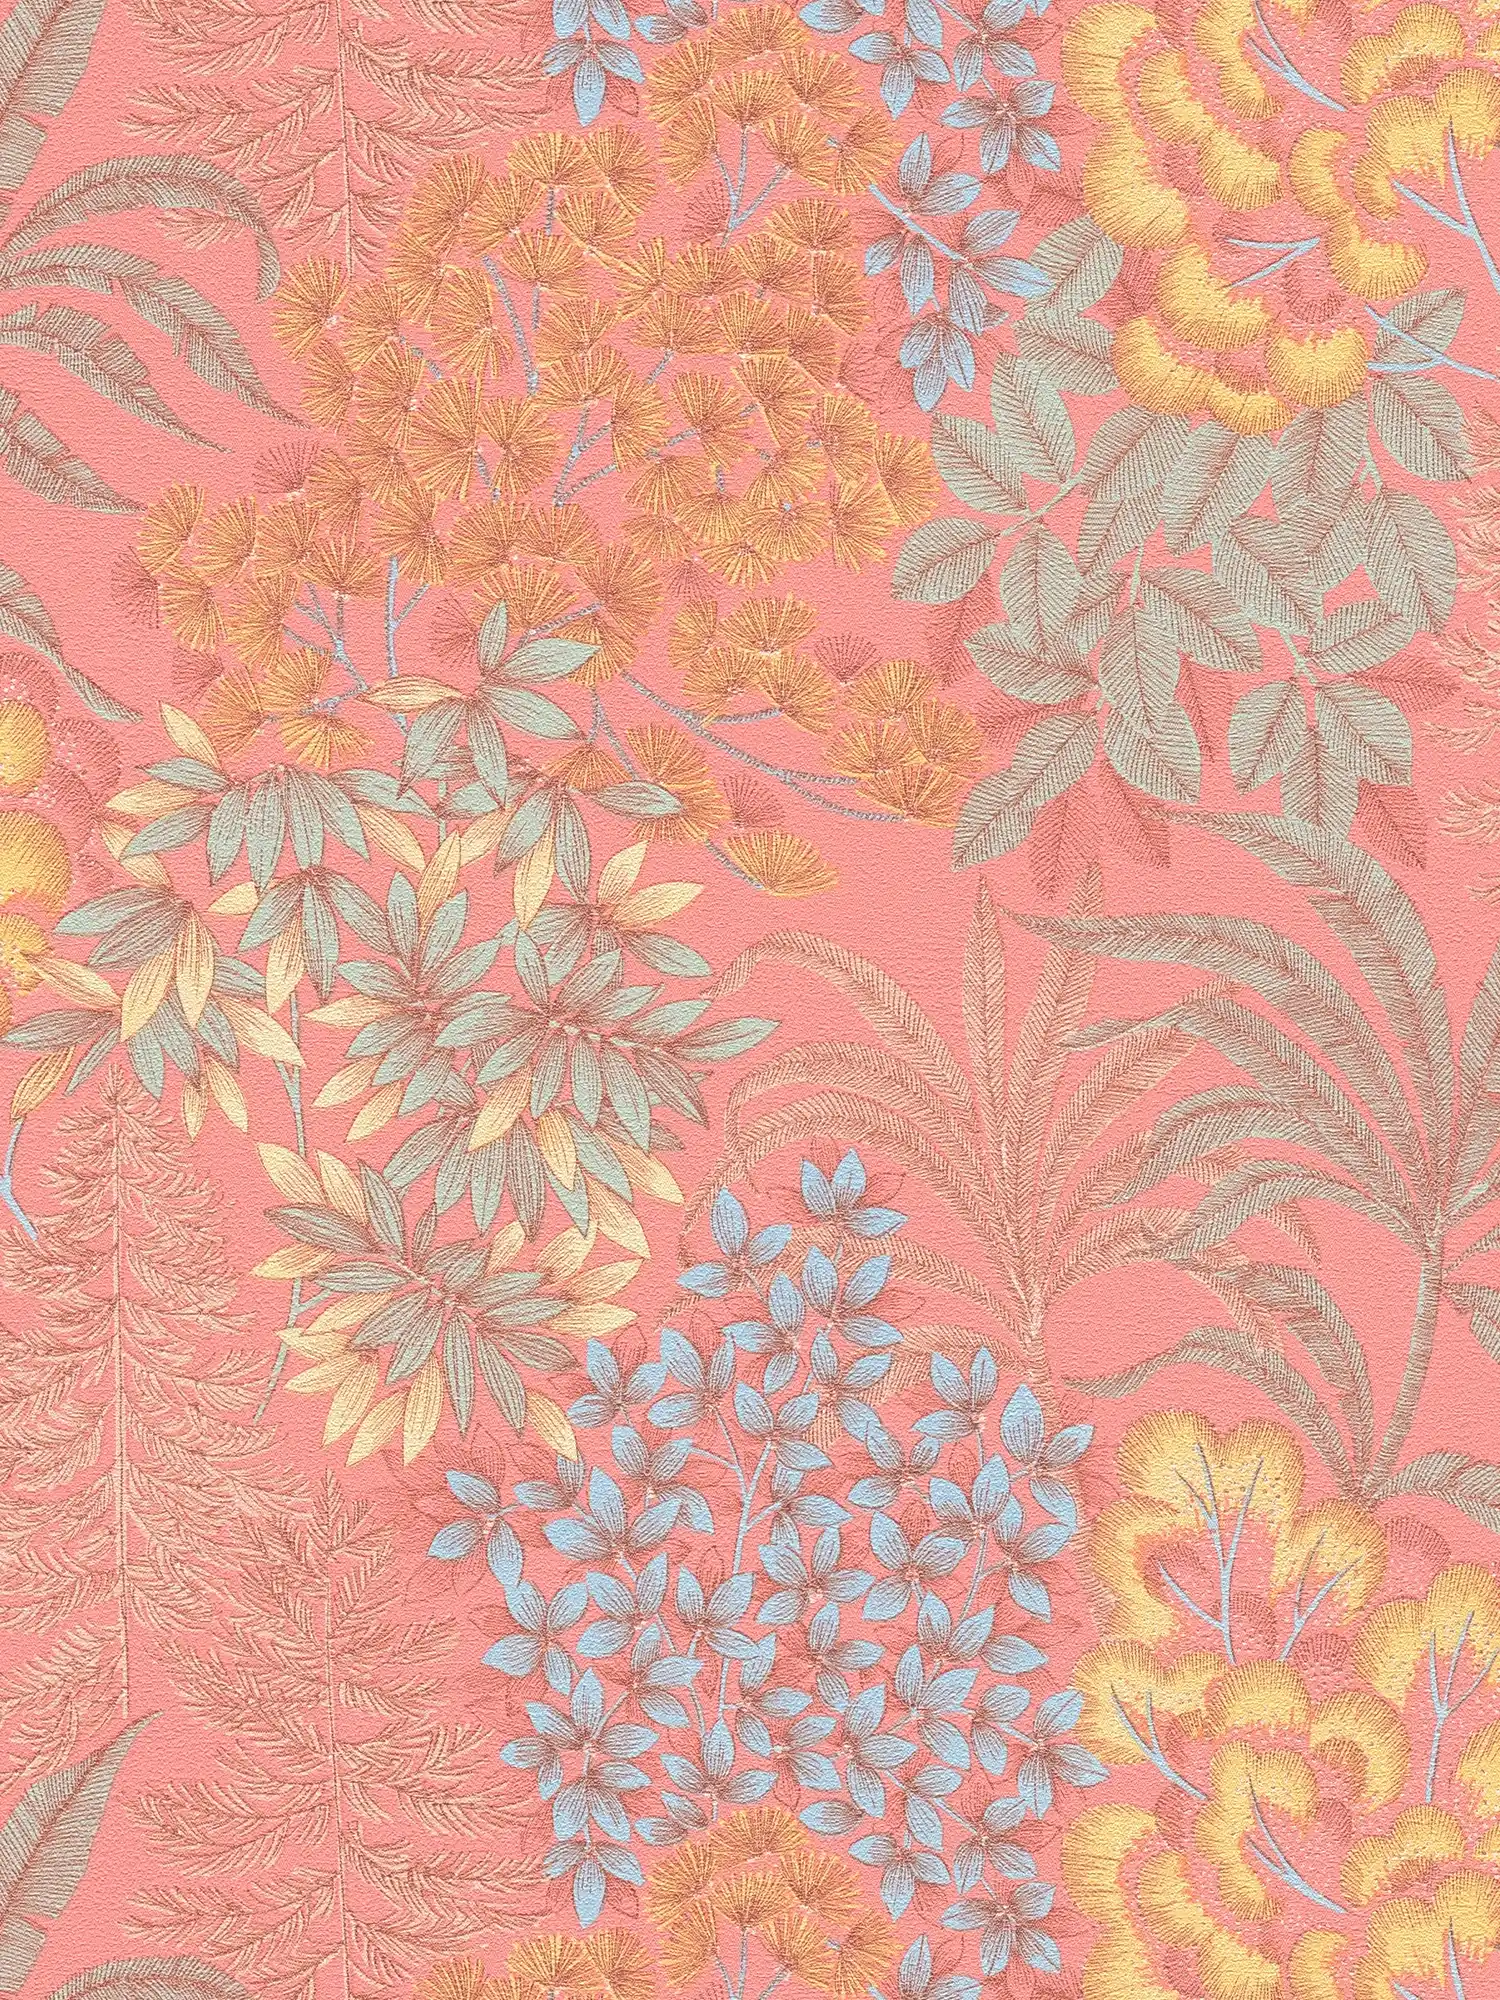 Speels bloemenbehang in een subtiele kleur - roze, blauw, geel
